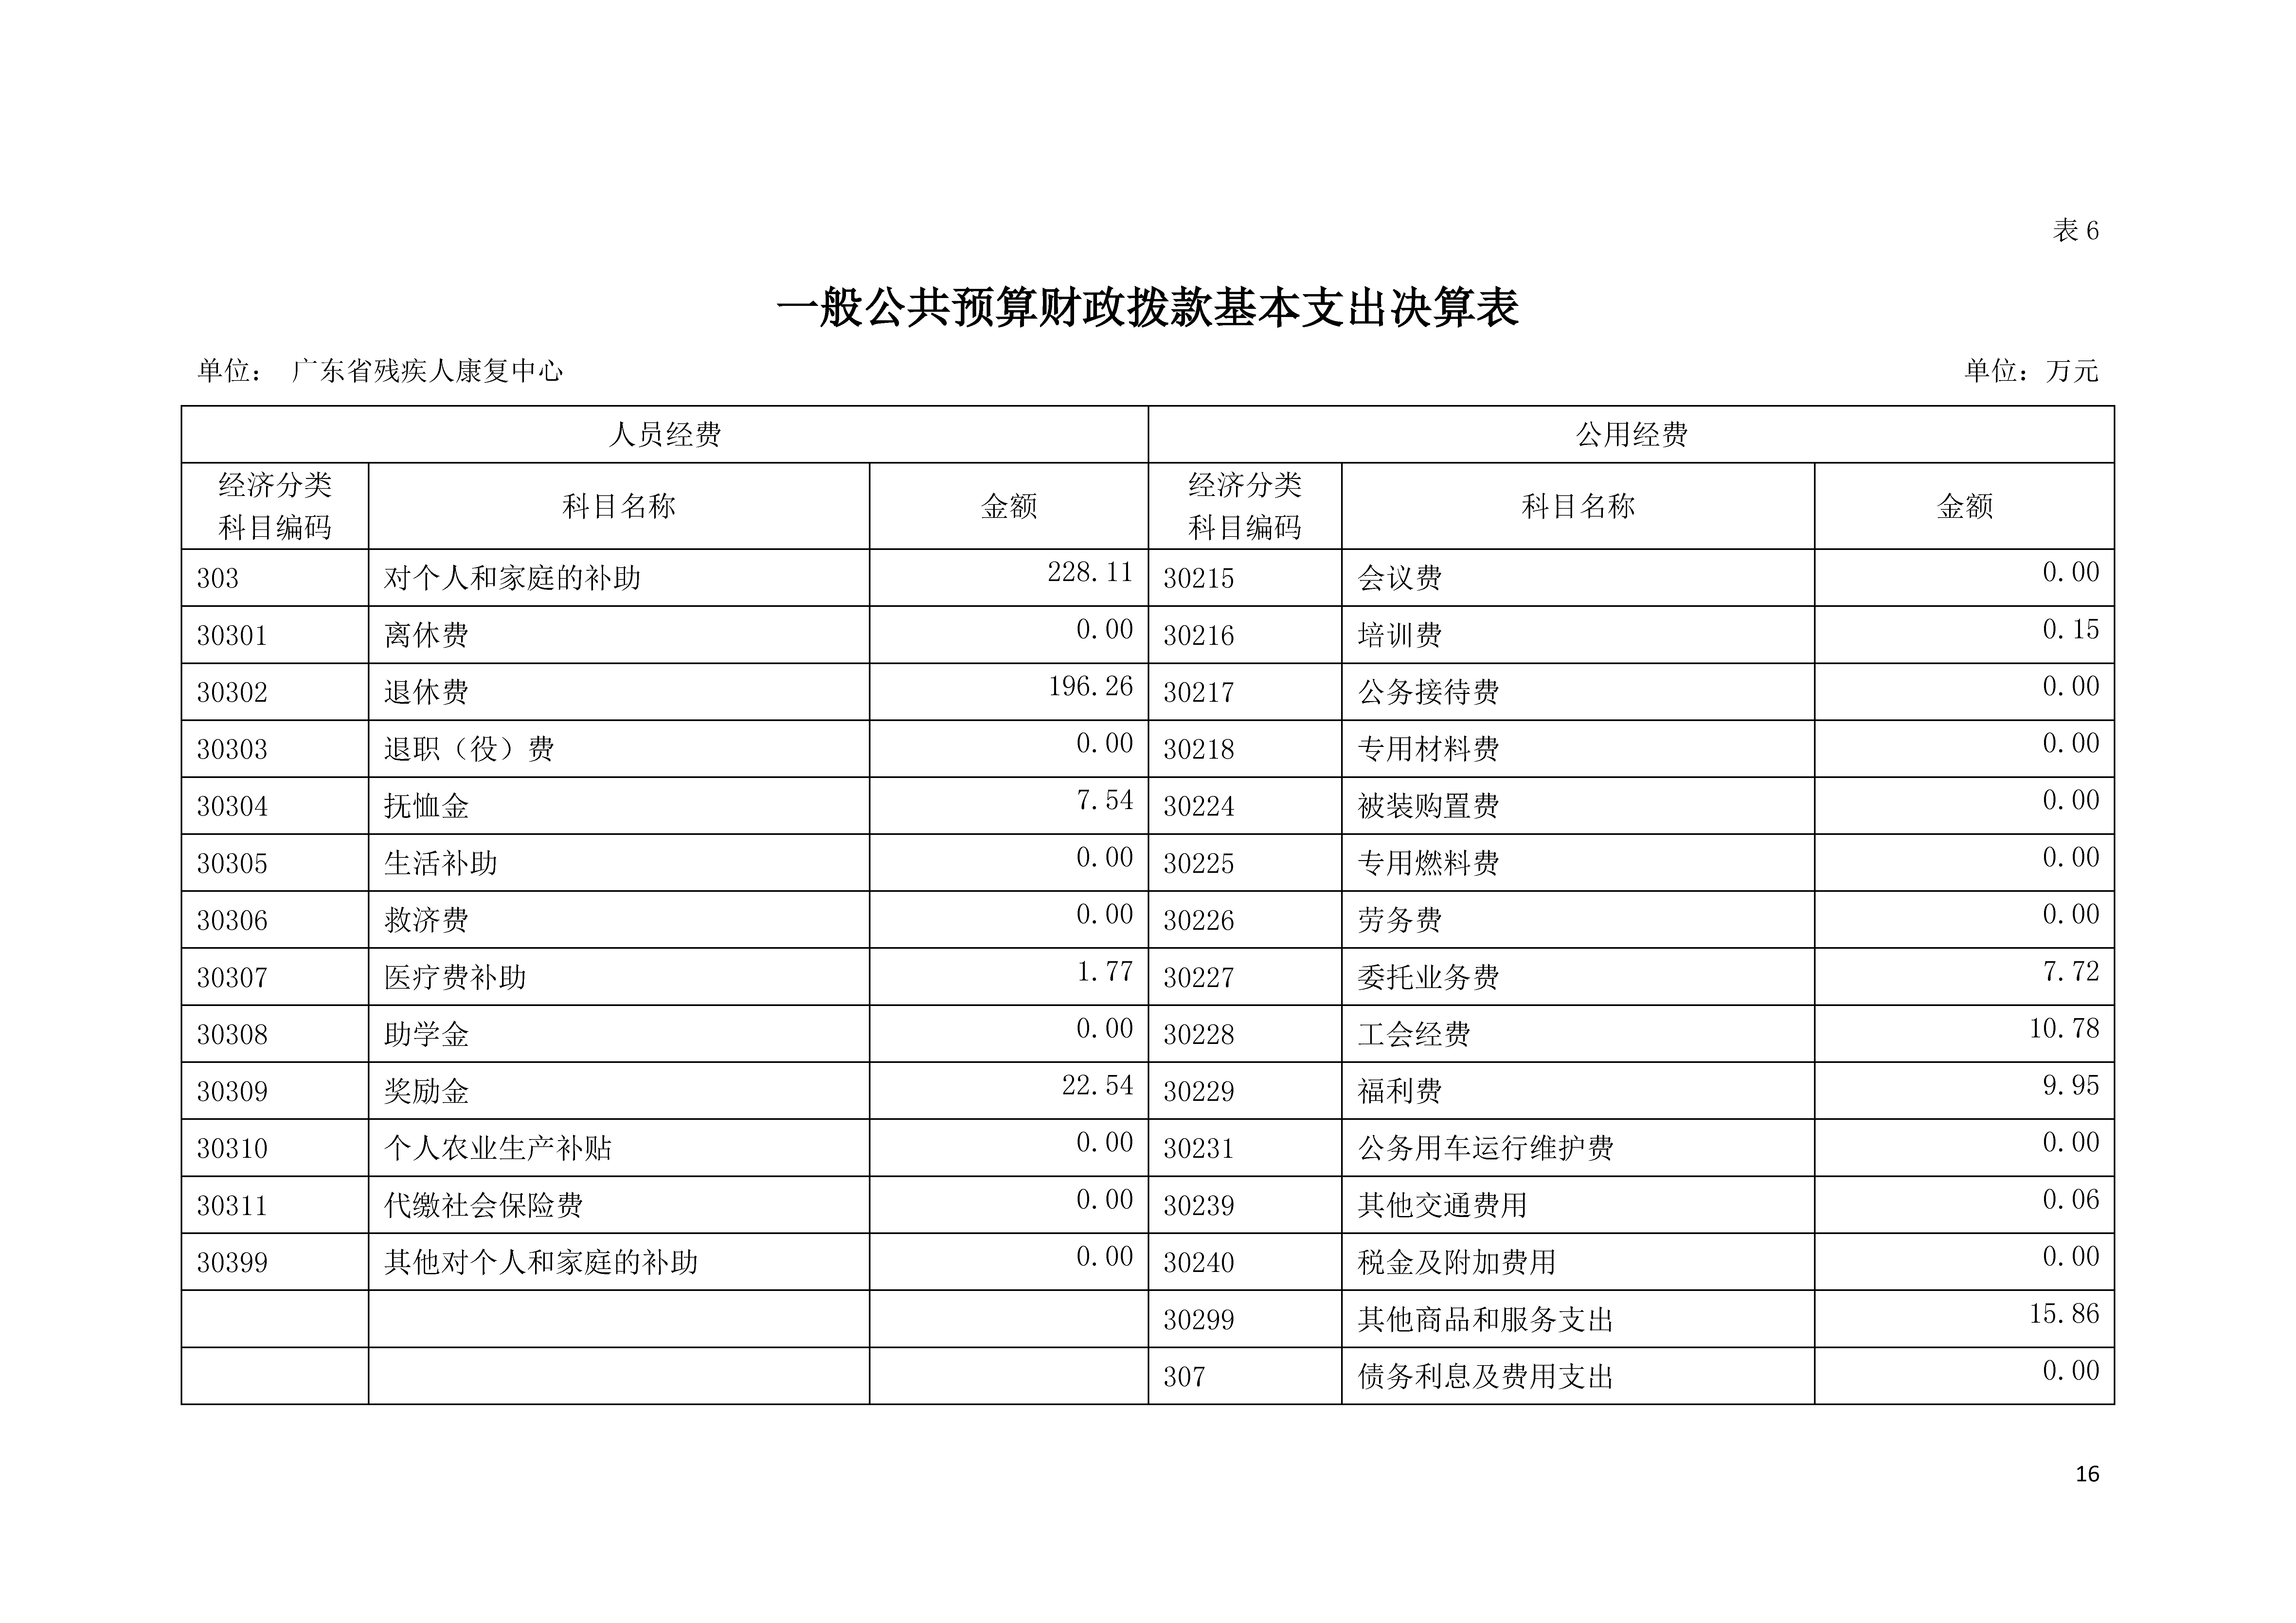 2020年广东省残疾人康复中心部门决算_页面_16.jpg